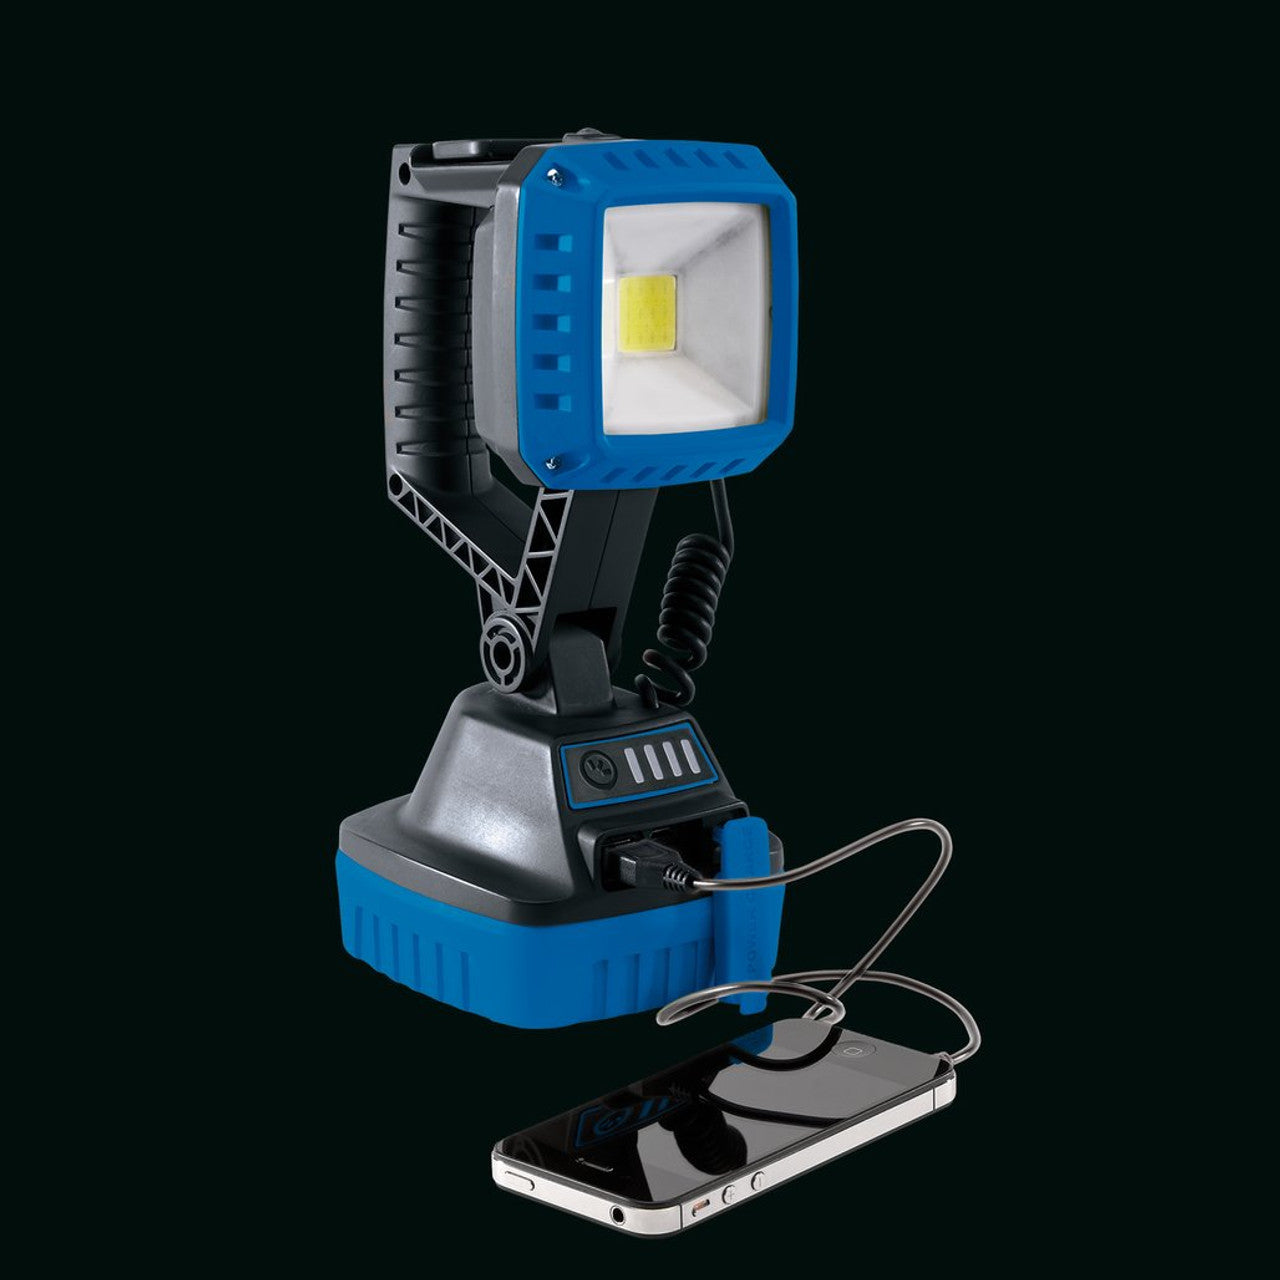 Draper COB LED Rechargeable Worklight, 10W, 1,000 Lumens, Blue, 4 x 2.2Ah Batteries